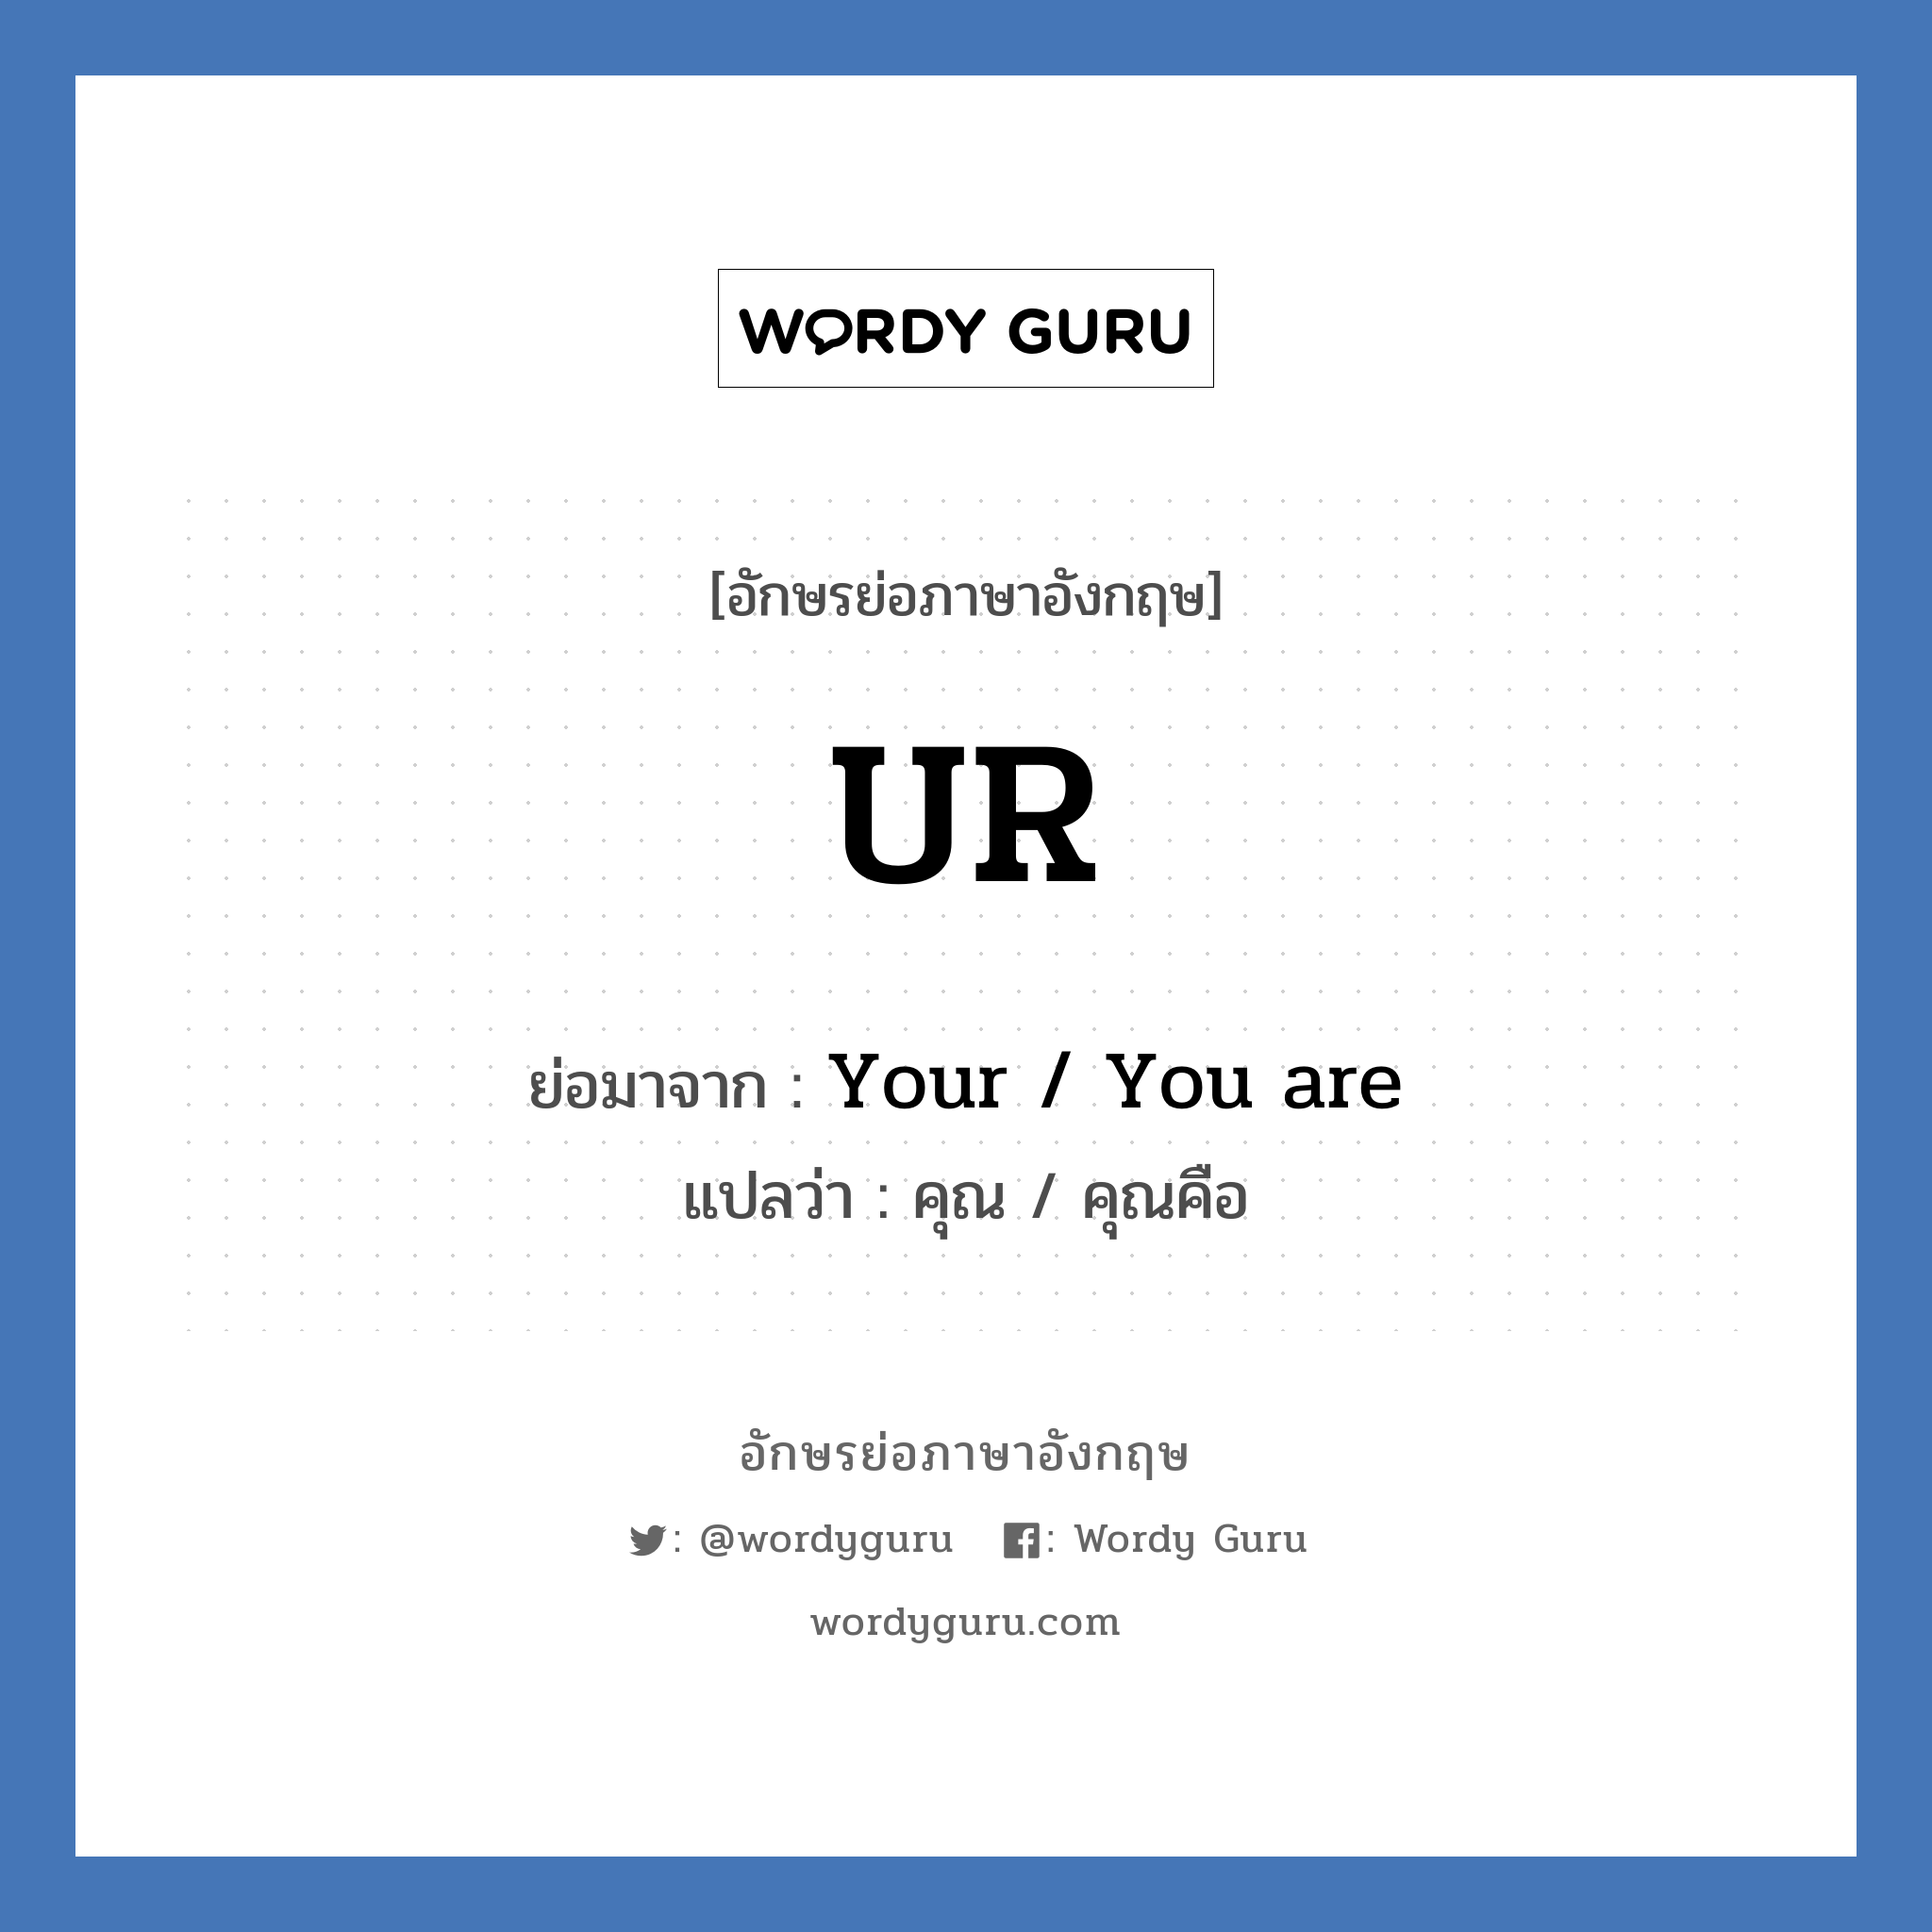 Your / You are คำย่อคือ? แปลว่า?, อักษรย่อภาษาอังกฤษ Your / You are ย่อมาจาก UR แปลว่า คุณ / คุณคือ